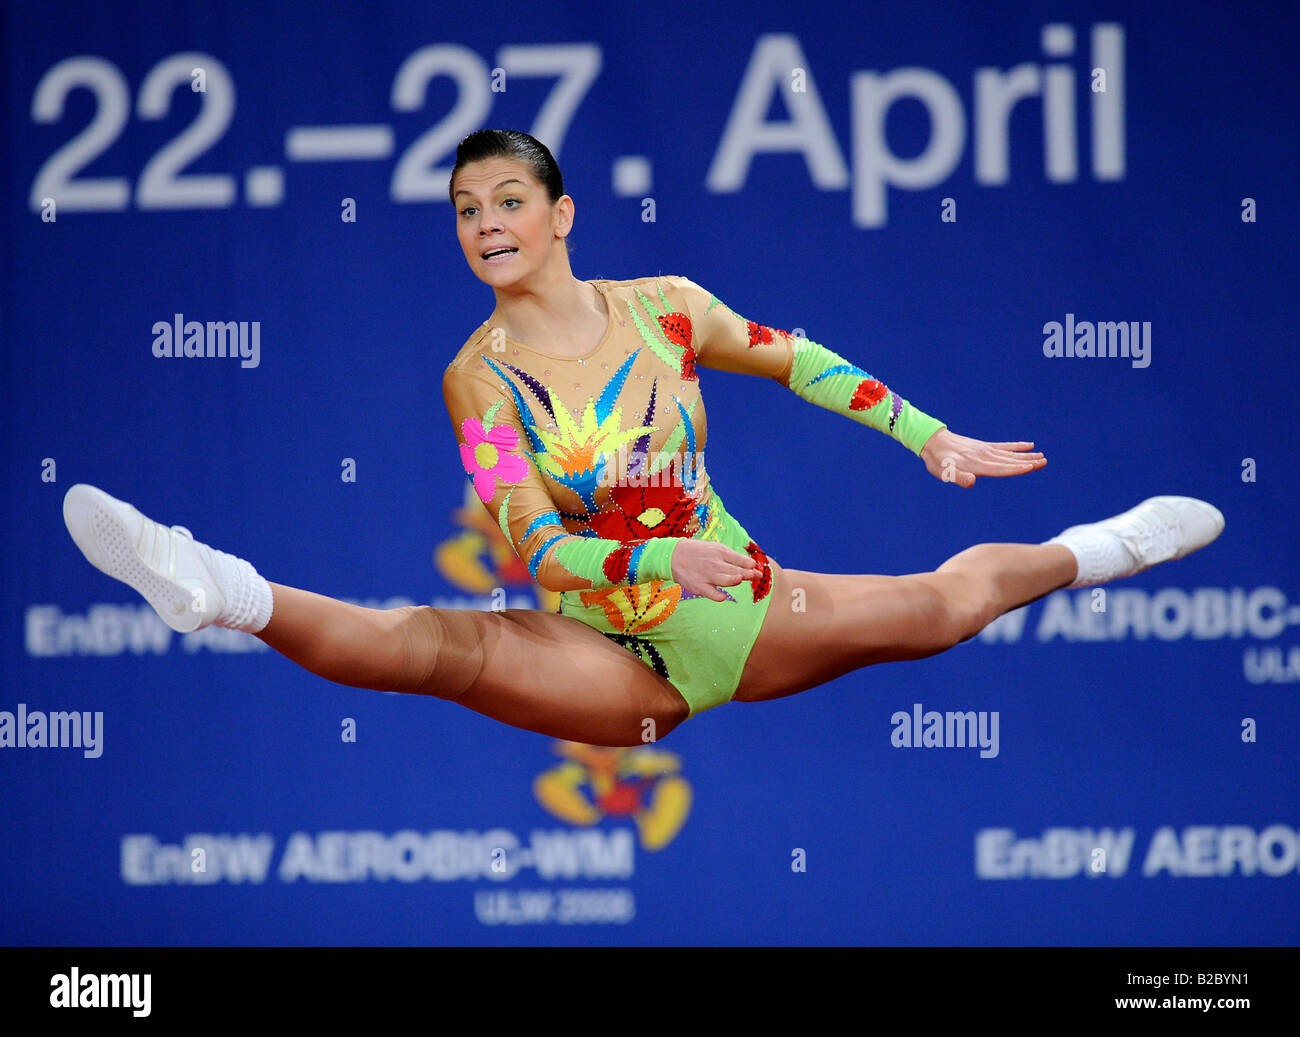 Elmira Dassaeva, Spanien, 10. Aerobe Gymnastik World Championship, Ulm, Baden-Württemberg, Deutschland, Europa Stockfoto